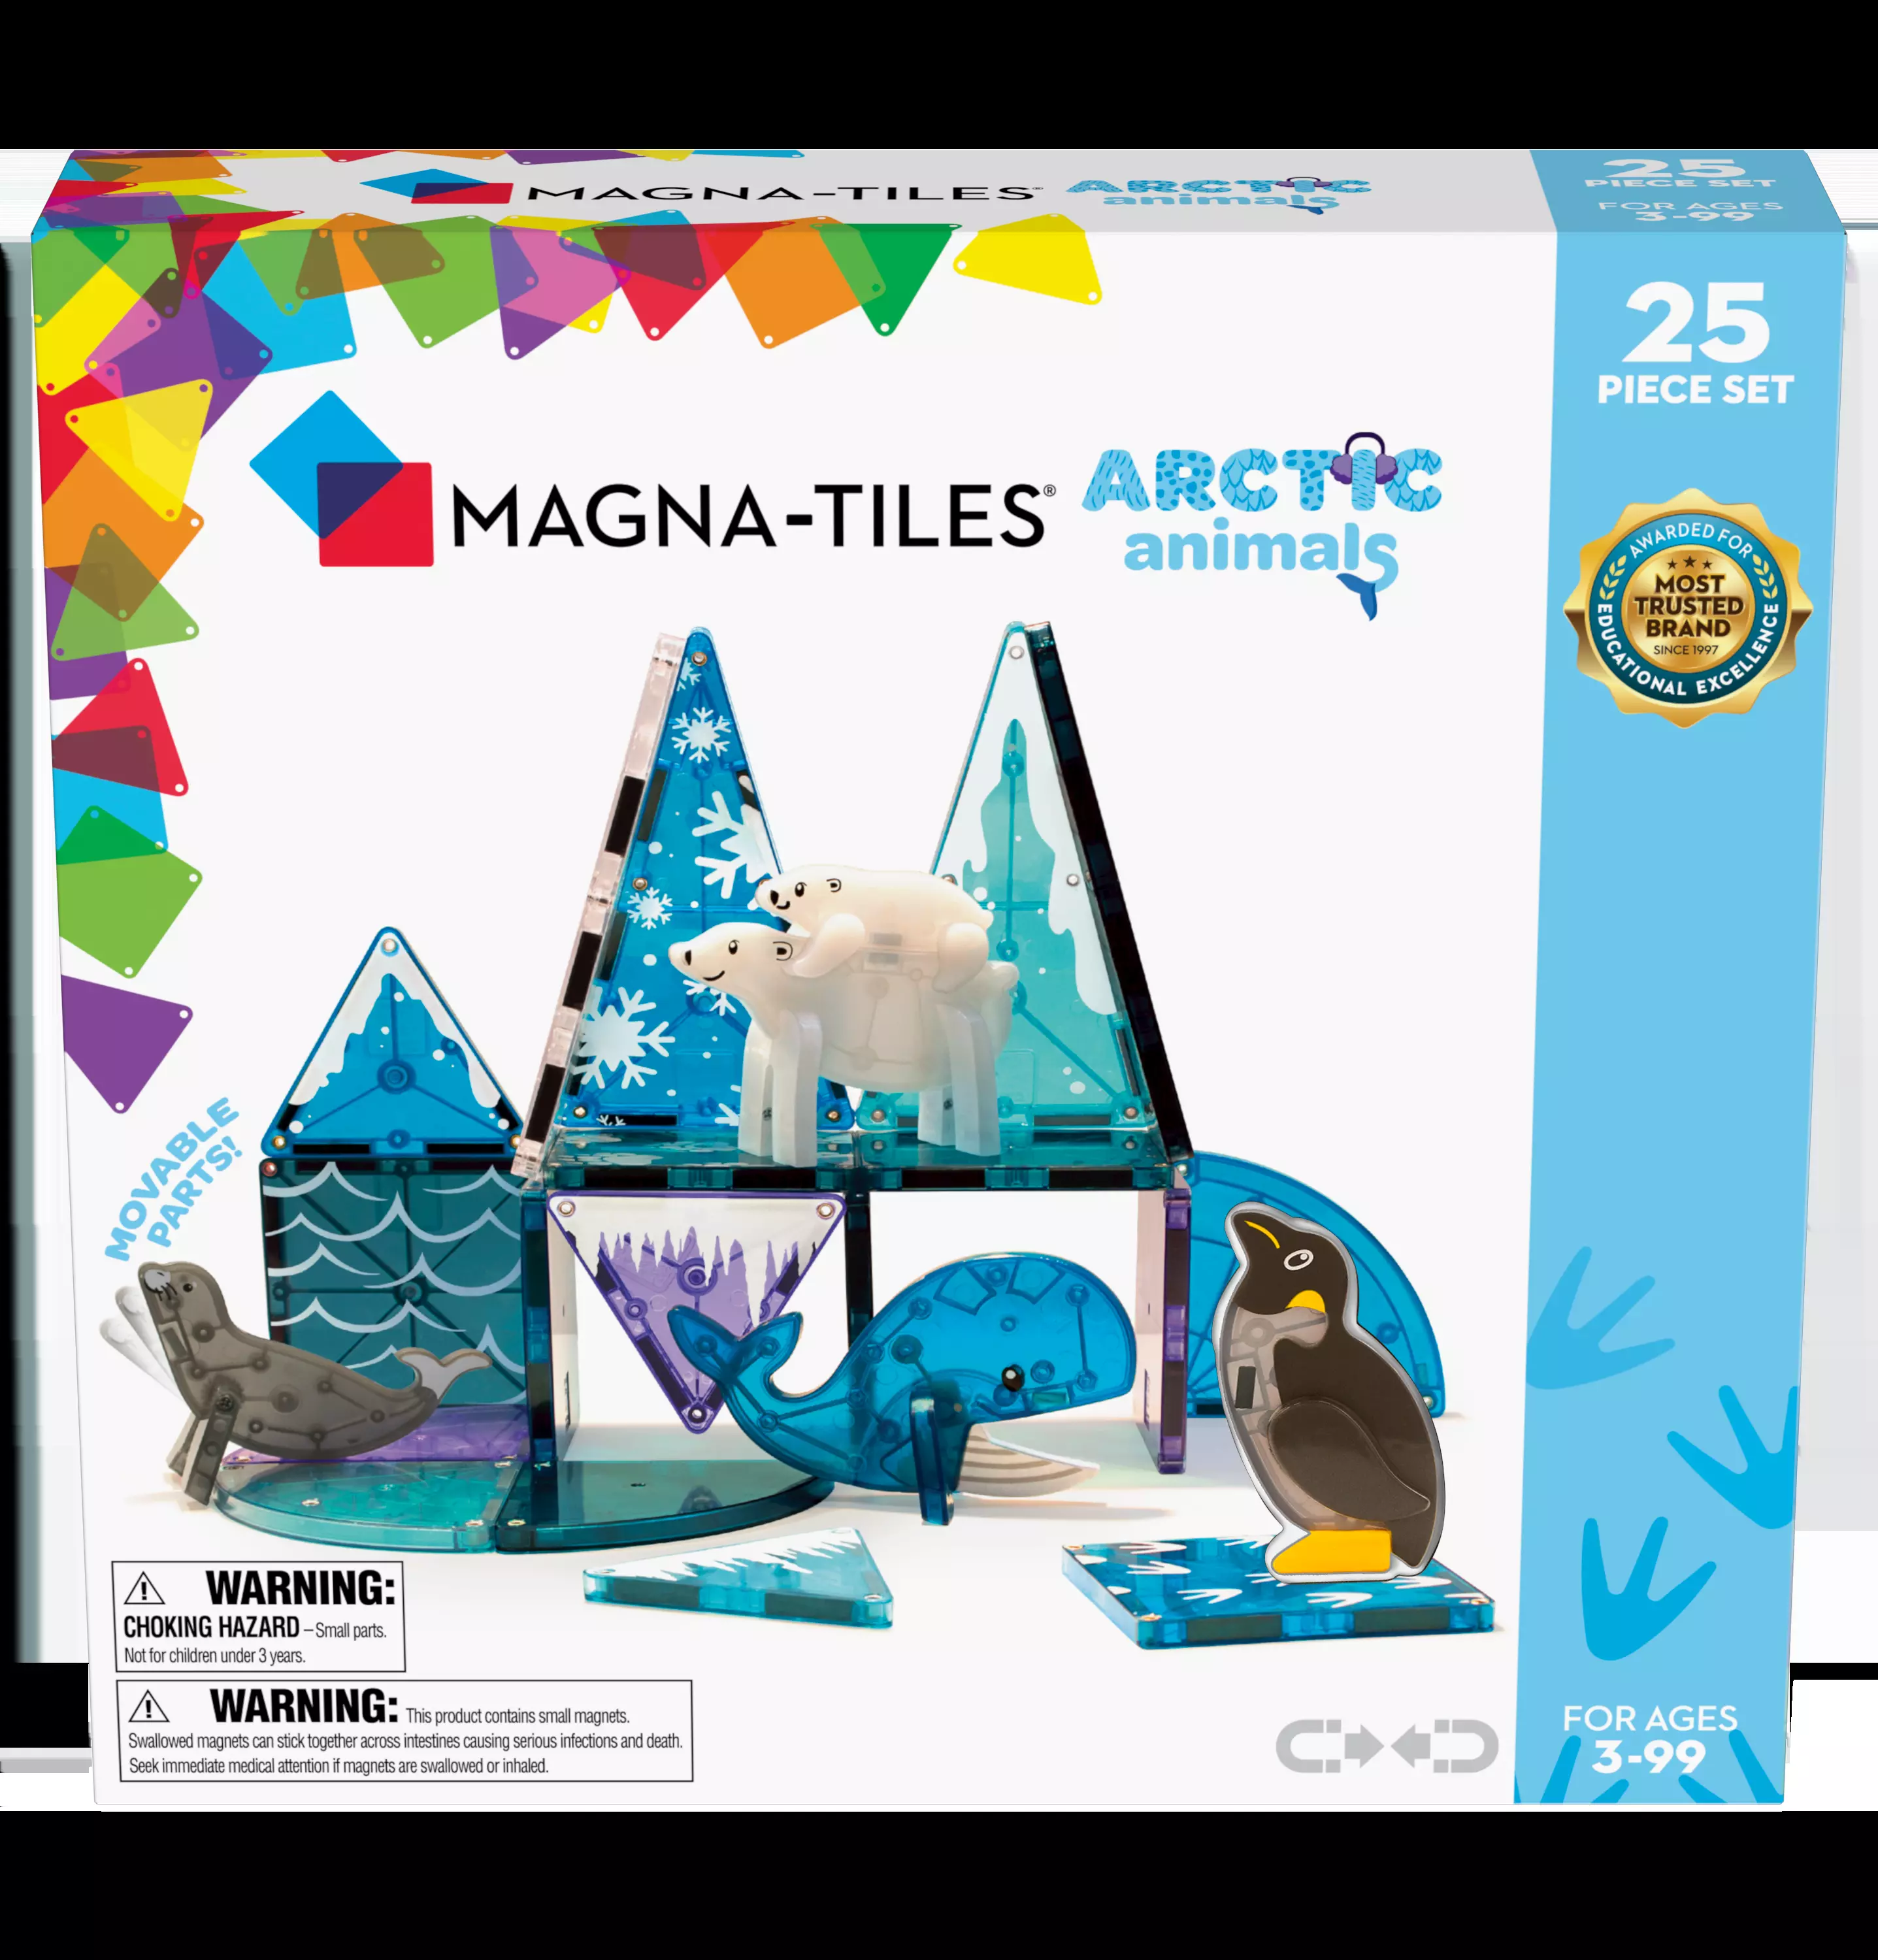 Magna-Tiles Artic Animals Pcs Set 90221